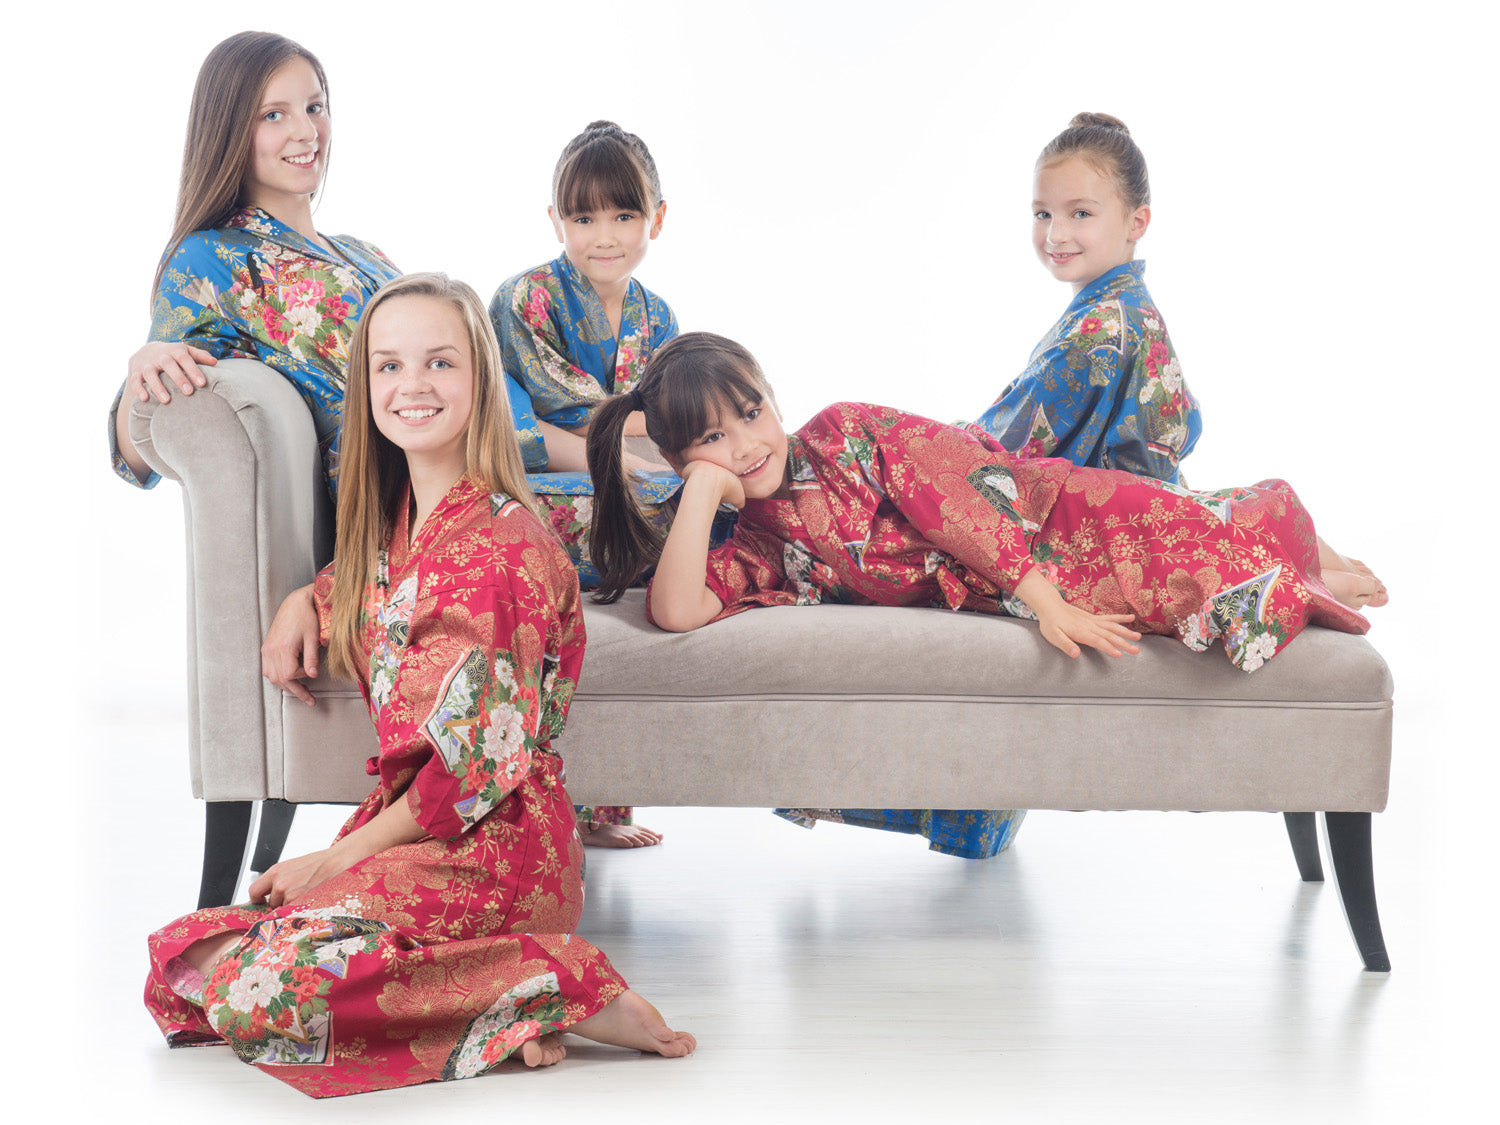 Age 10 to 11 Red Cotton Japanese Girls Kimono range